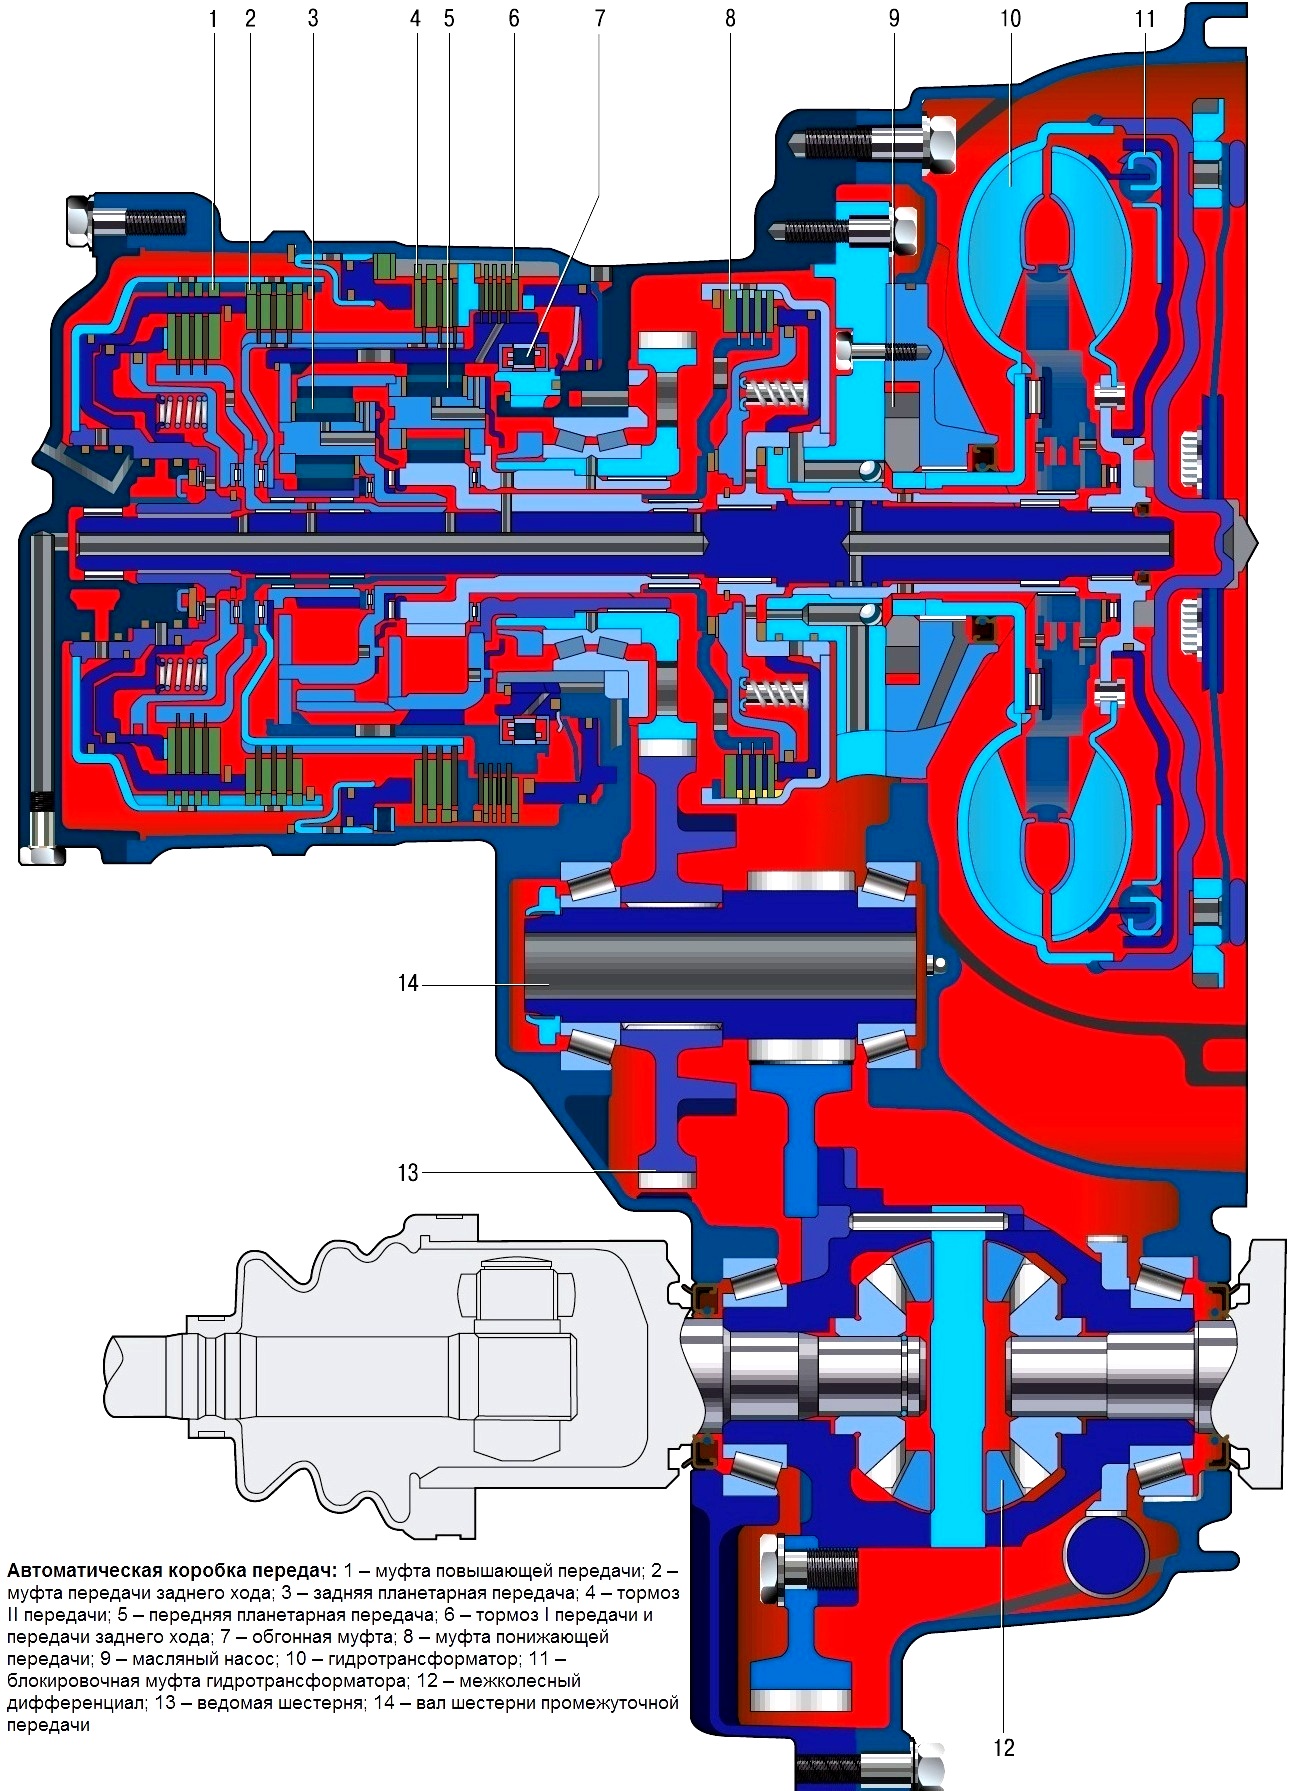 Особенности конструкции автоматической коробки передач Hyundai Solaris